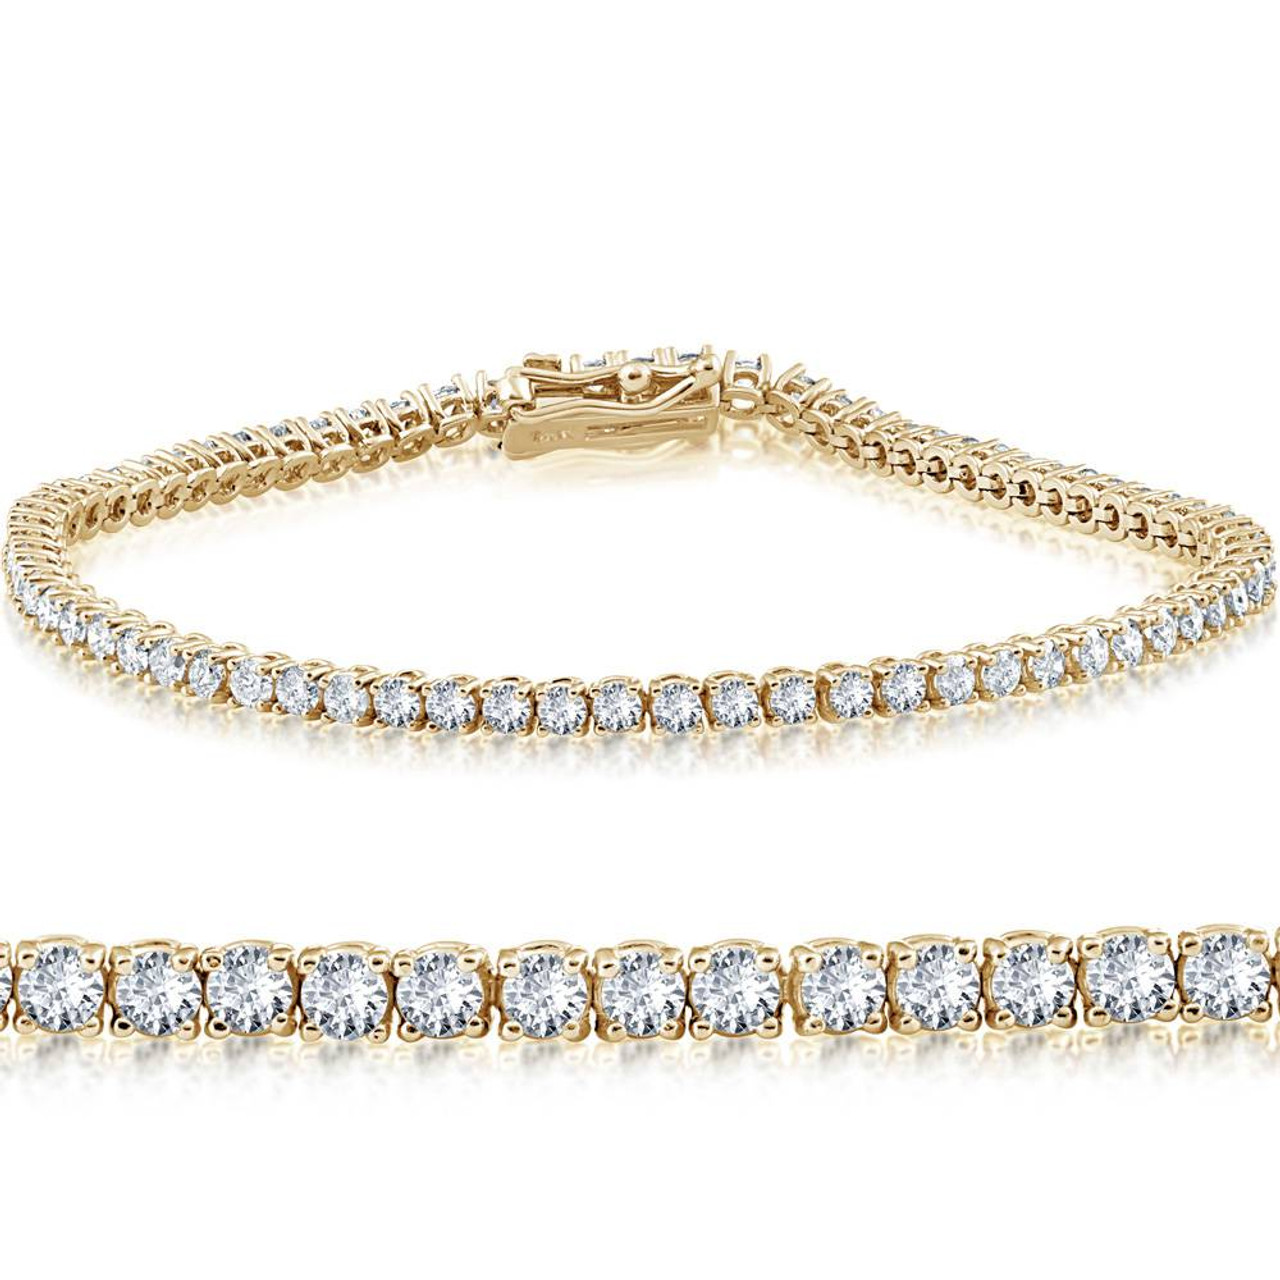 7 Carat Natural Diamond Tennis Bracelet – SPIRITUAL GLOSS